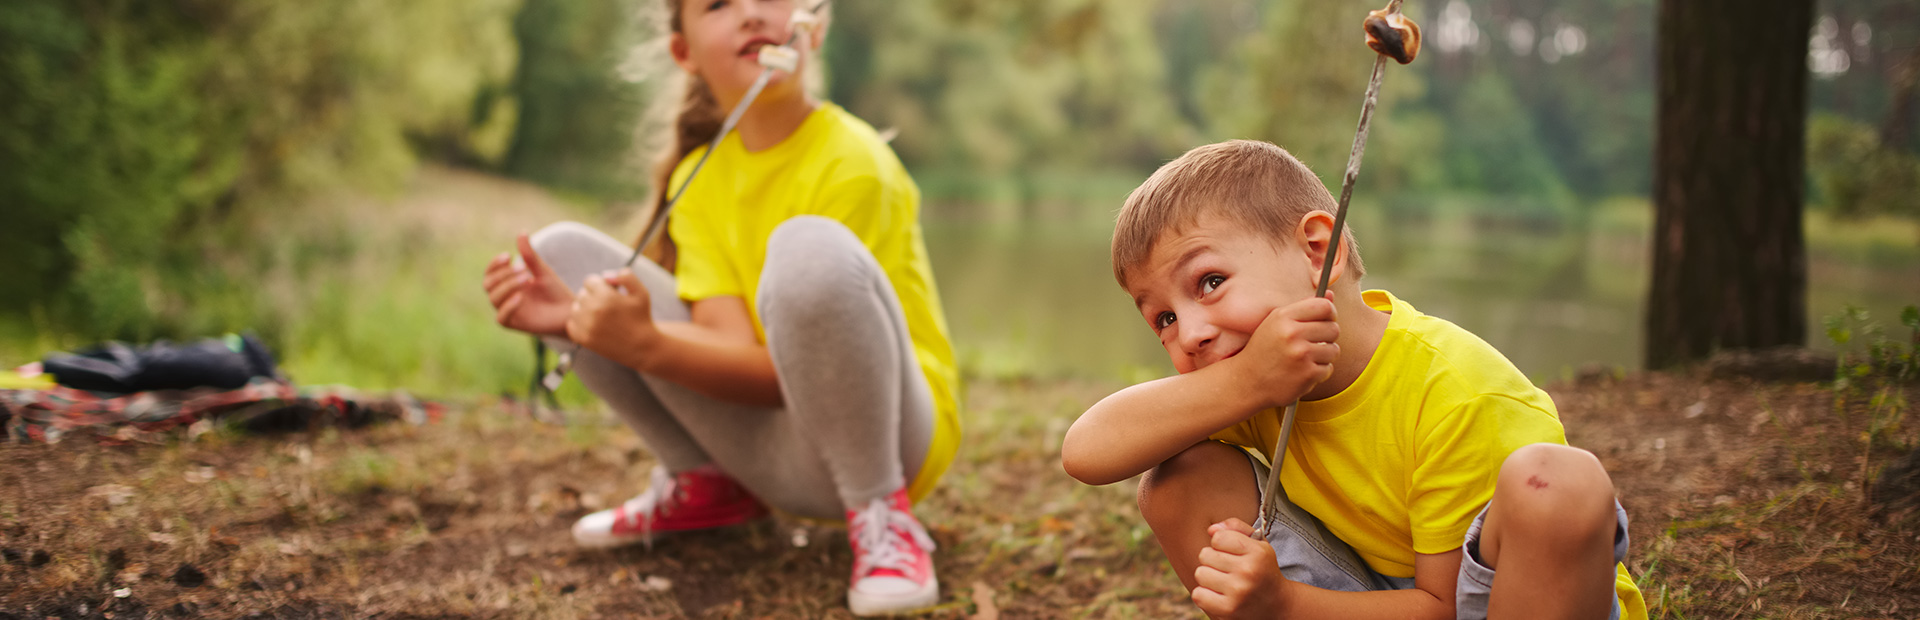 Na zdjęciu mała dziewczynka i chłopiec bawiące się w lesie.  